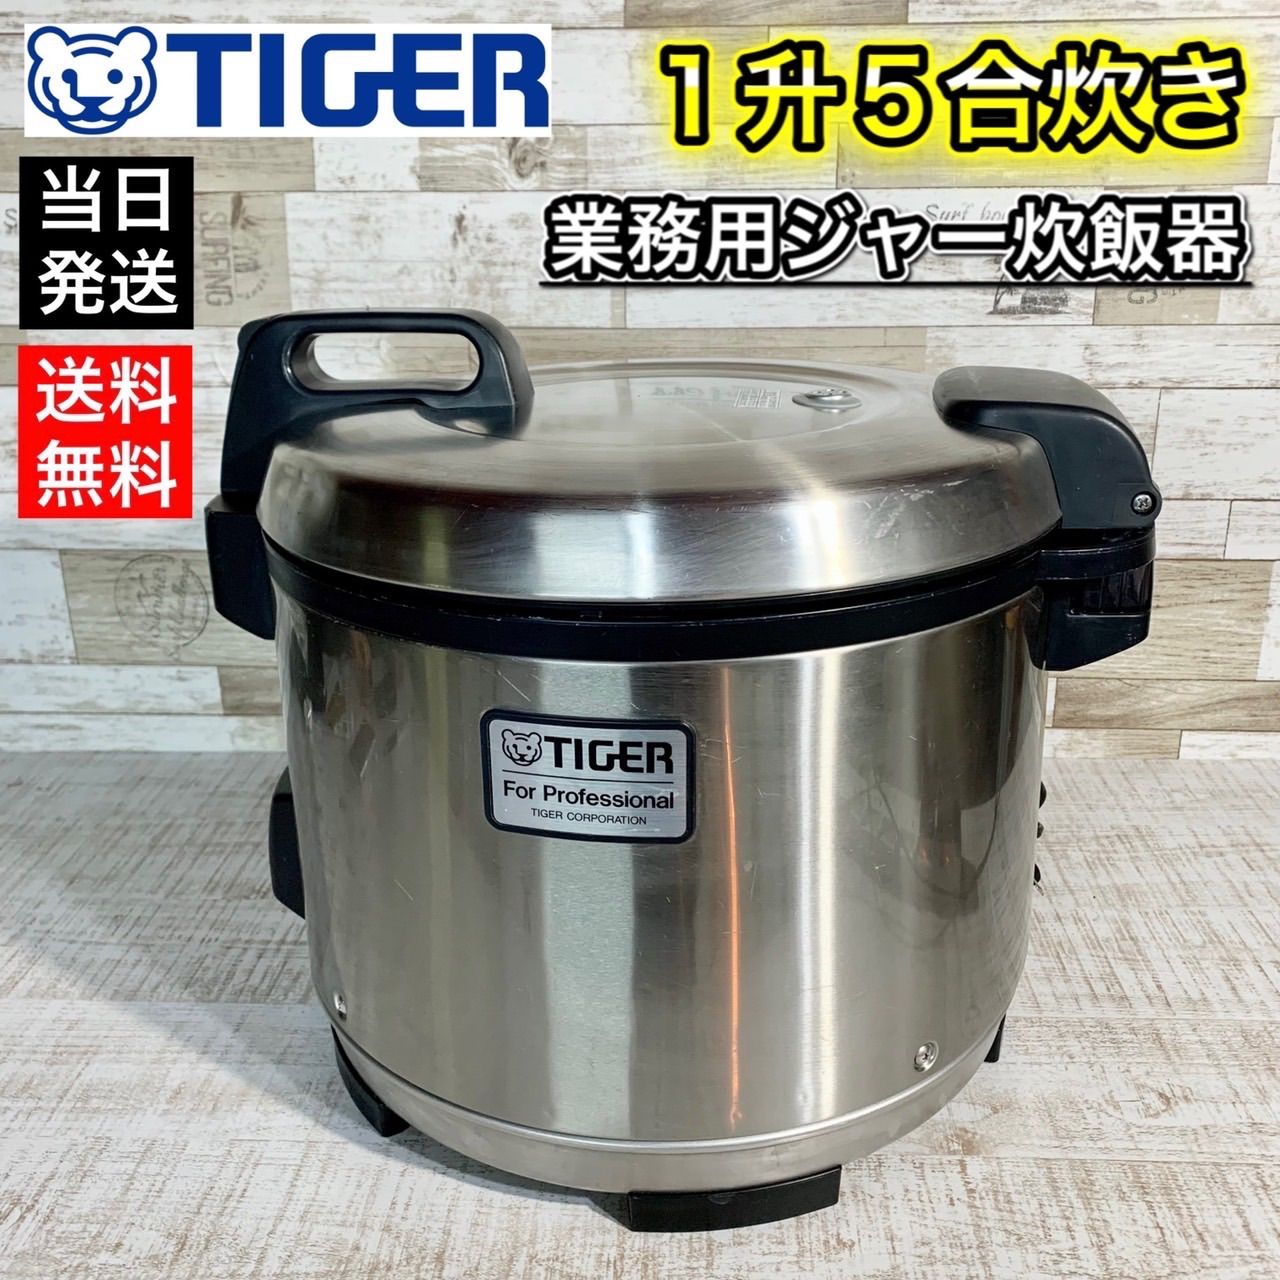 タイガー 炊飯器 一升 5合 カトレア 炊きたて 炊飯 ジャー JCC-2700-FT Tige 炊飯器